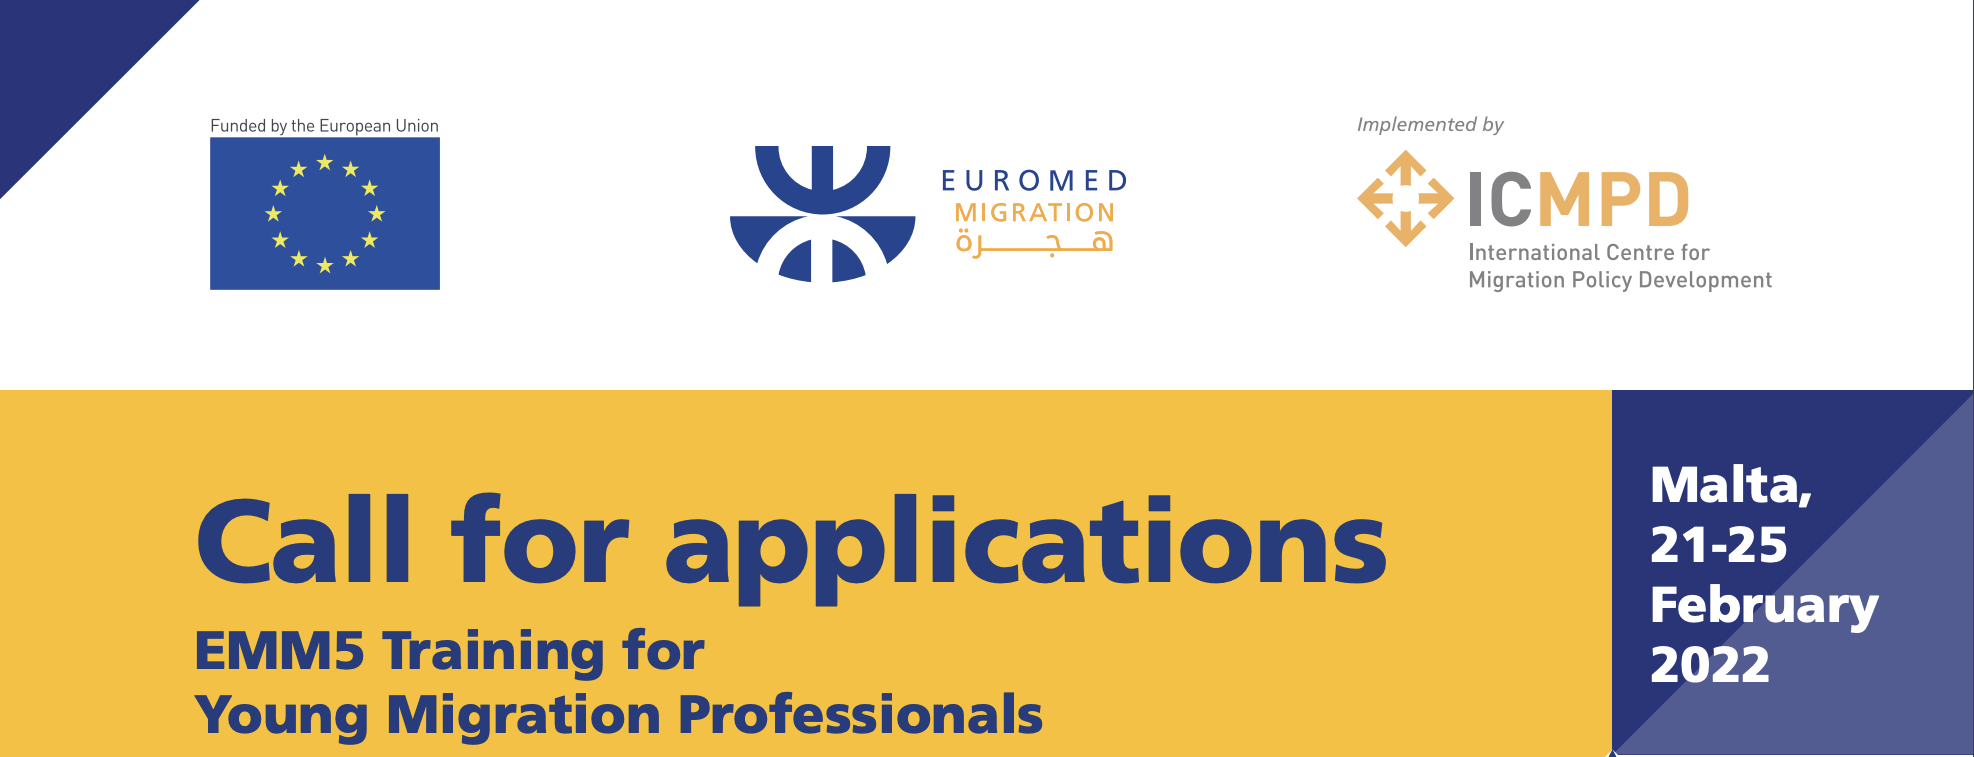 EUROMED Migrations organise une formation pour les jeunes professionnels de la migration